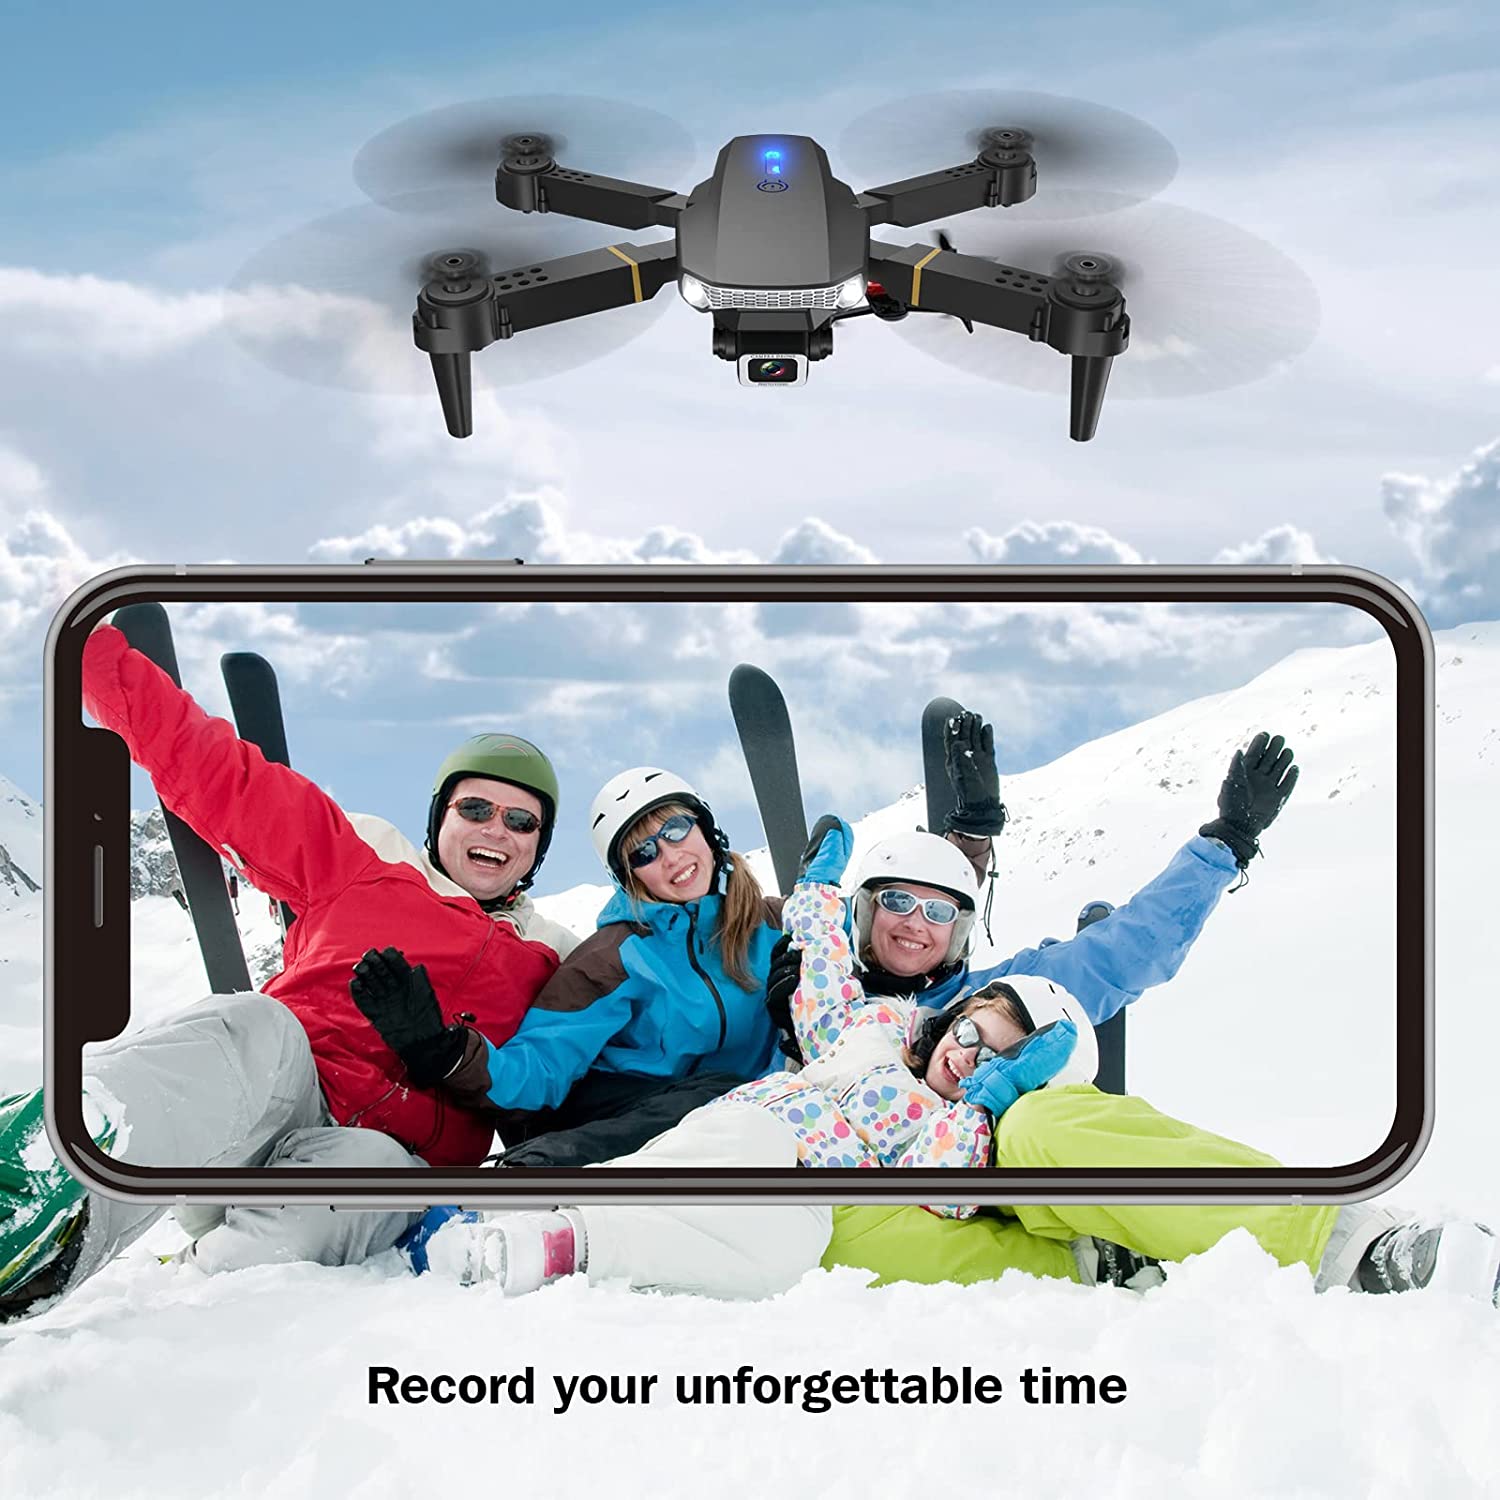 Drone sans caméra Mini pliant Quadcopter RC Jouet Altitude Hold pour enfants